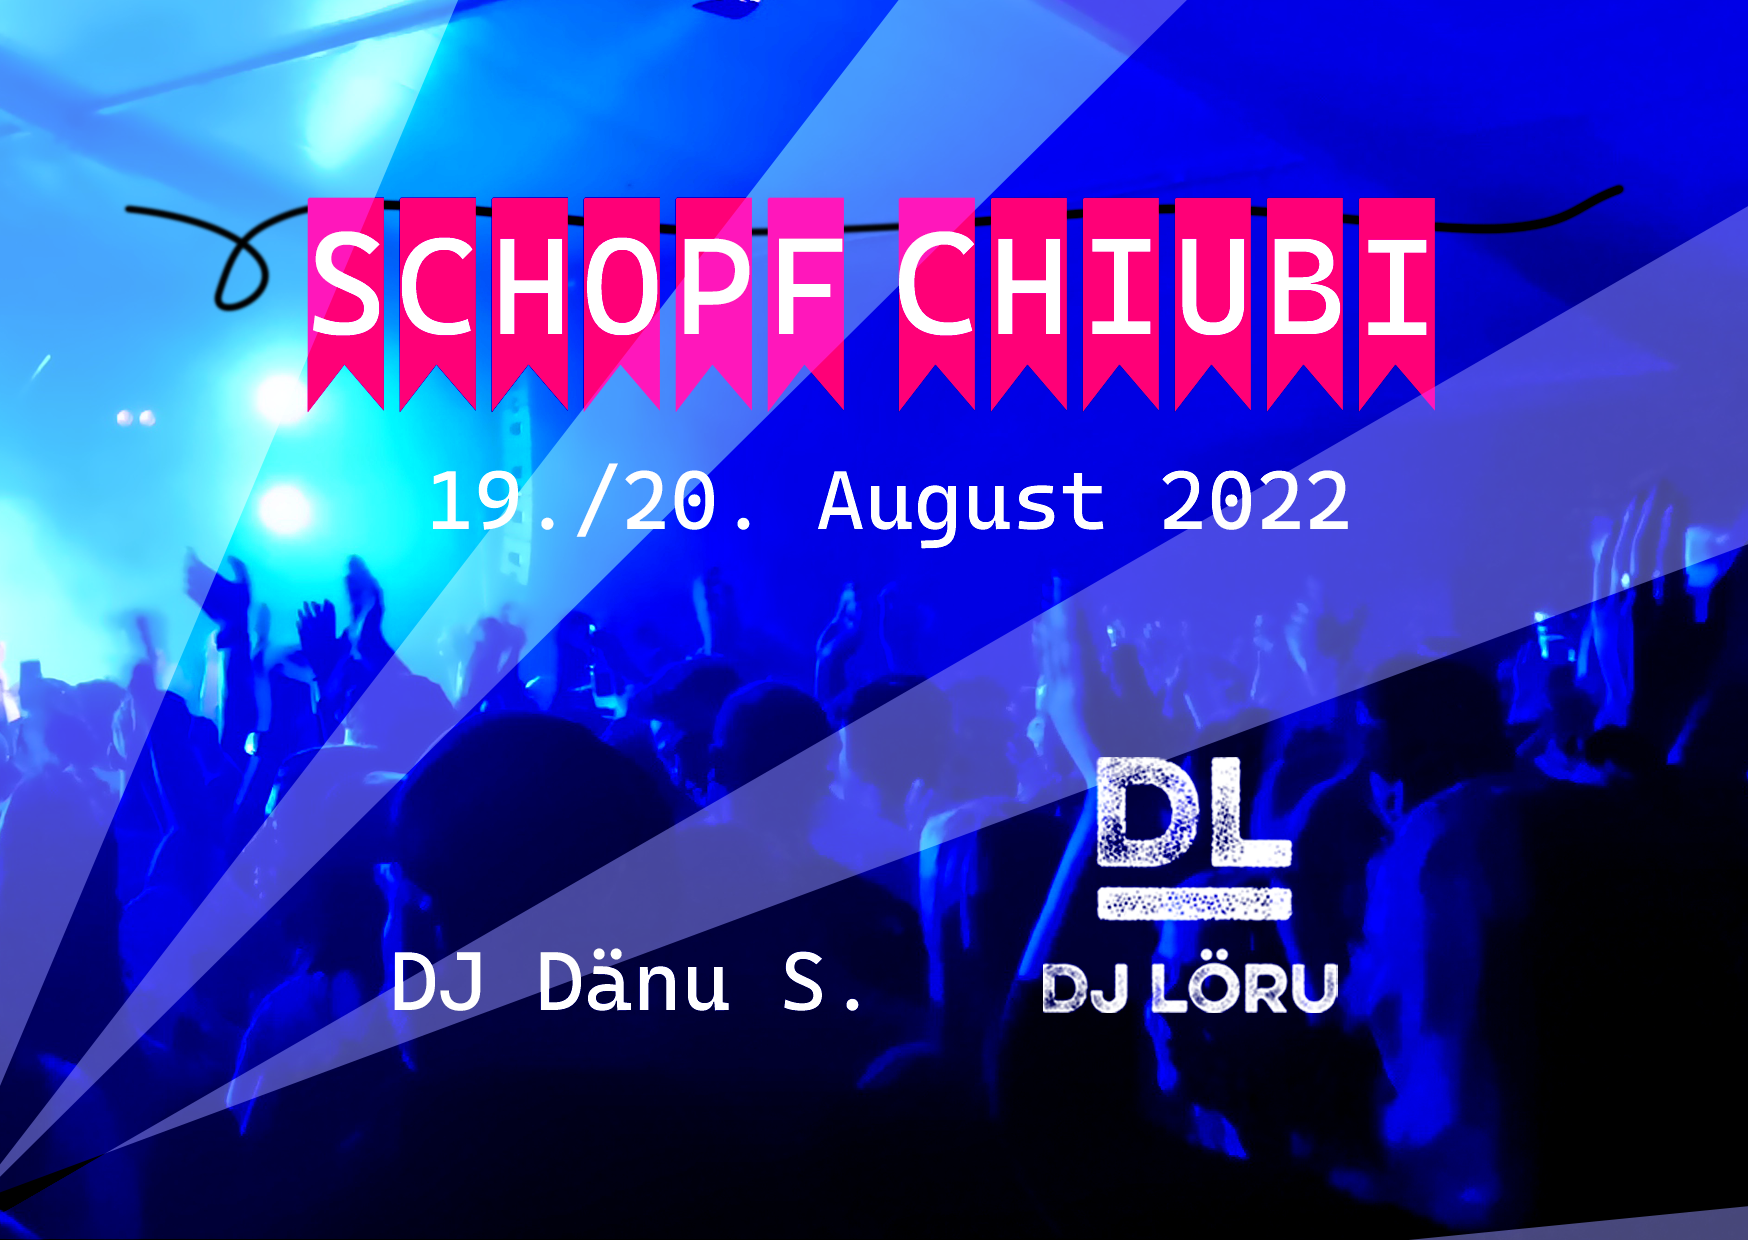 Schopf-Chiubi Flyer 2022 - 19. und 20. August 2022 mit DJ Dänu S. und DJ Löru